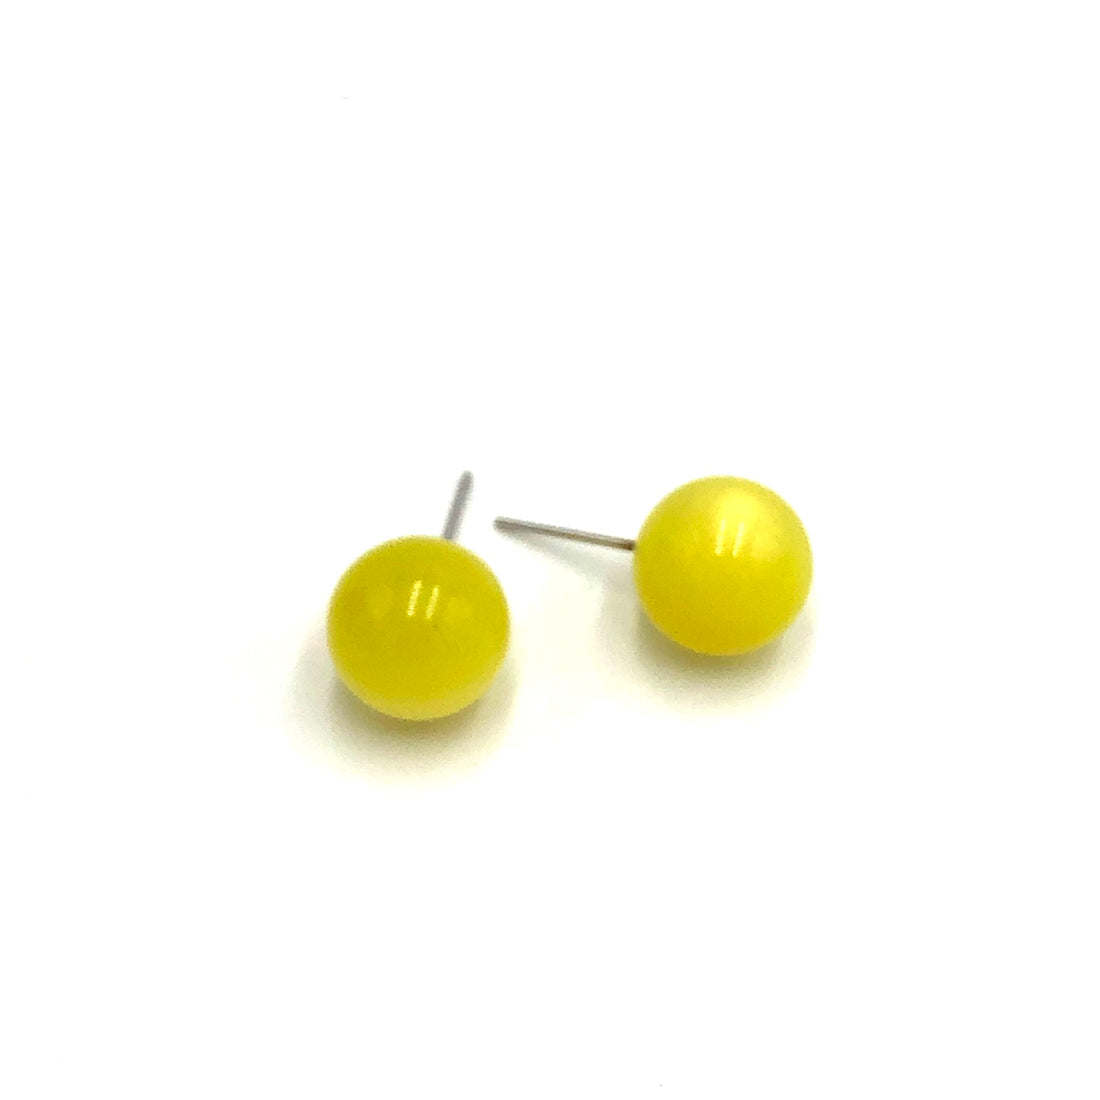 Sunshine Yellow Moonglow Ball Stud Earrings - 12mm